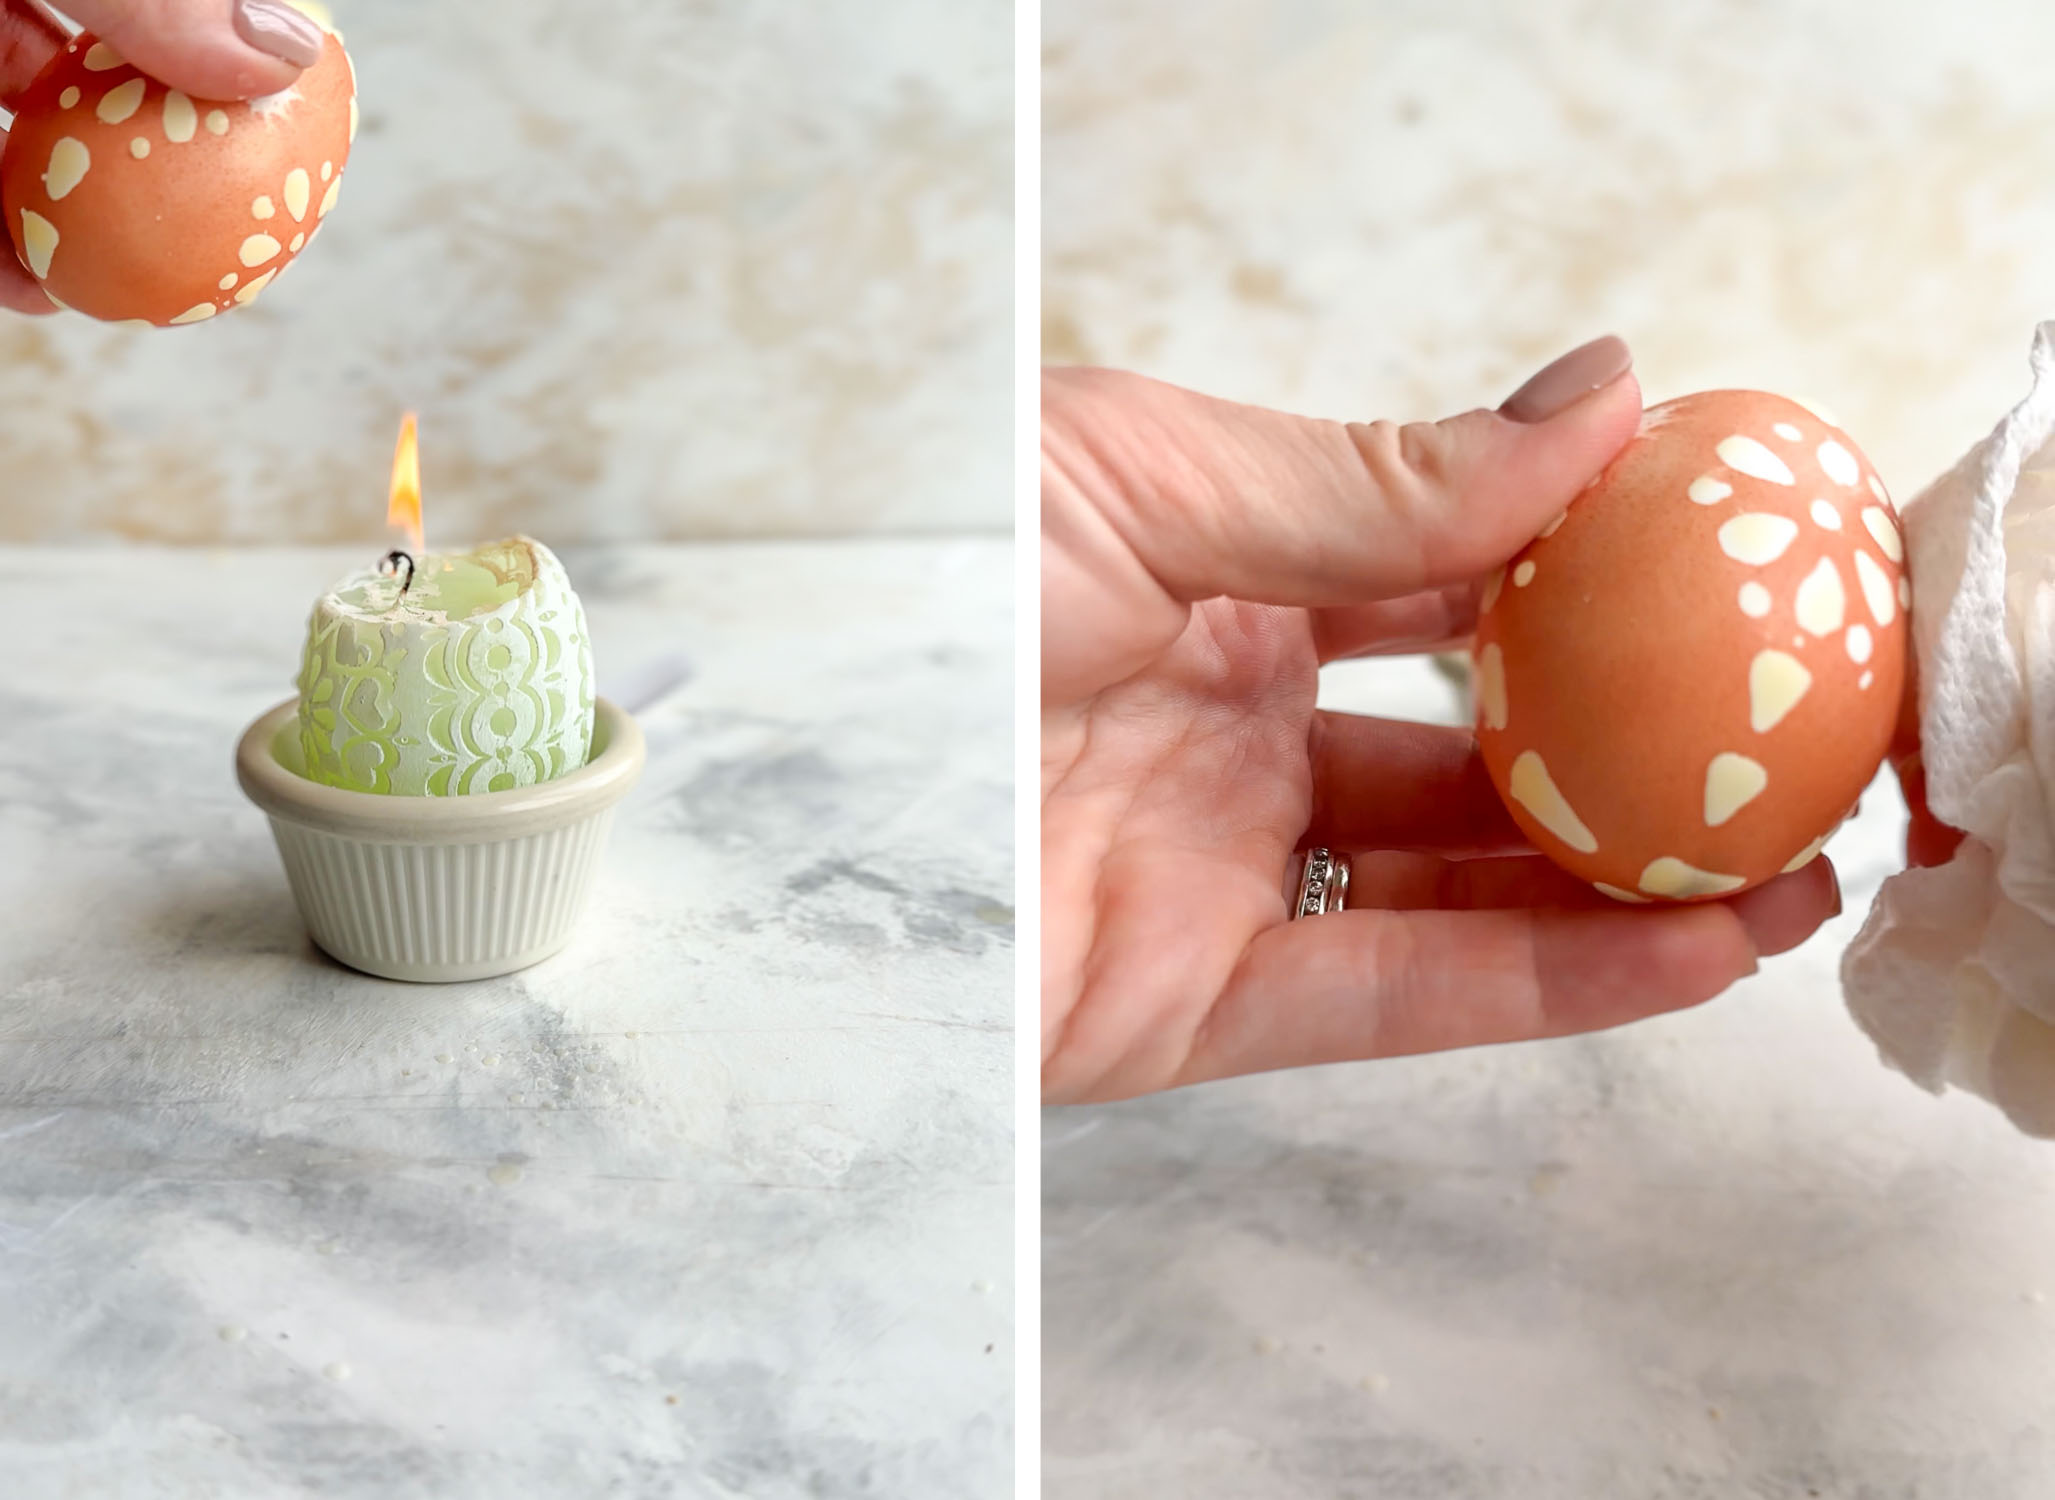 δύο φωτογραφίες - λιώσιμο κεριού στο πασχαλινό αυγό